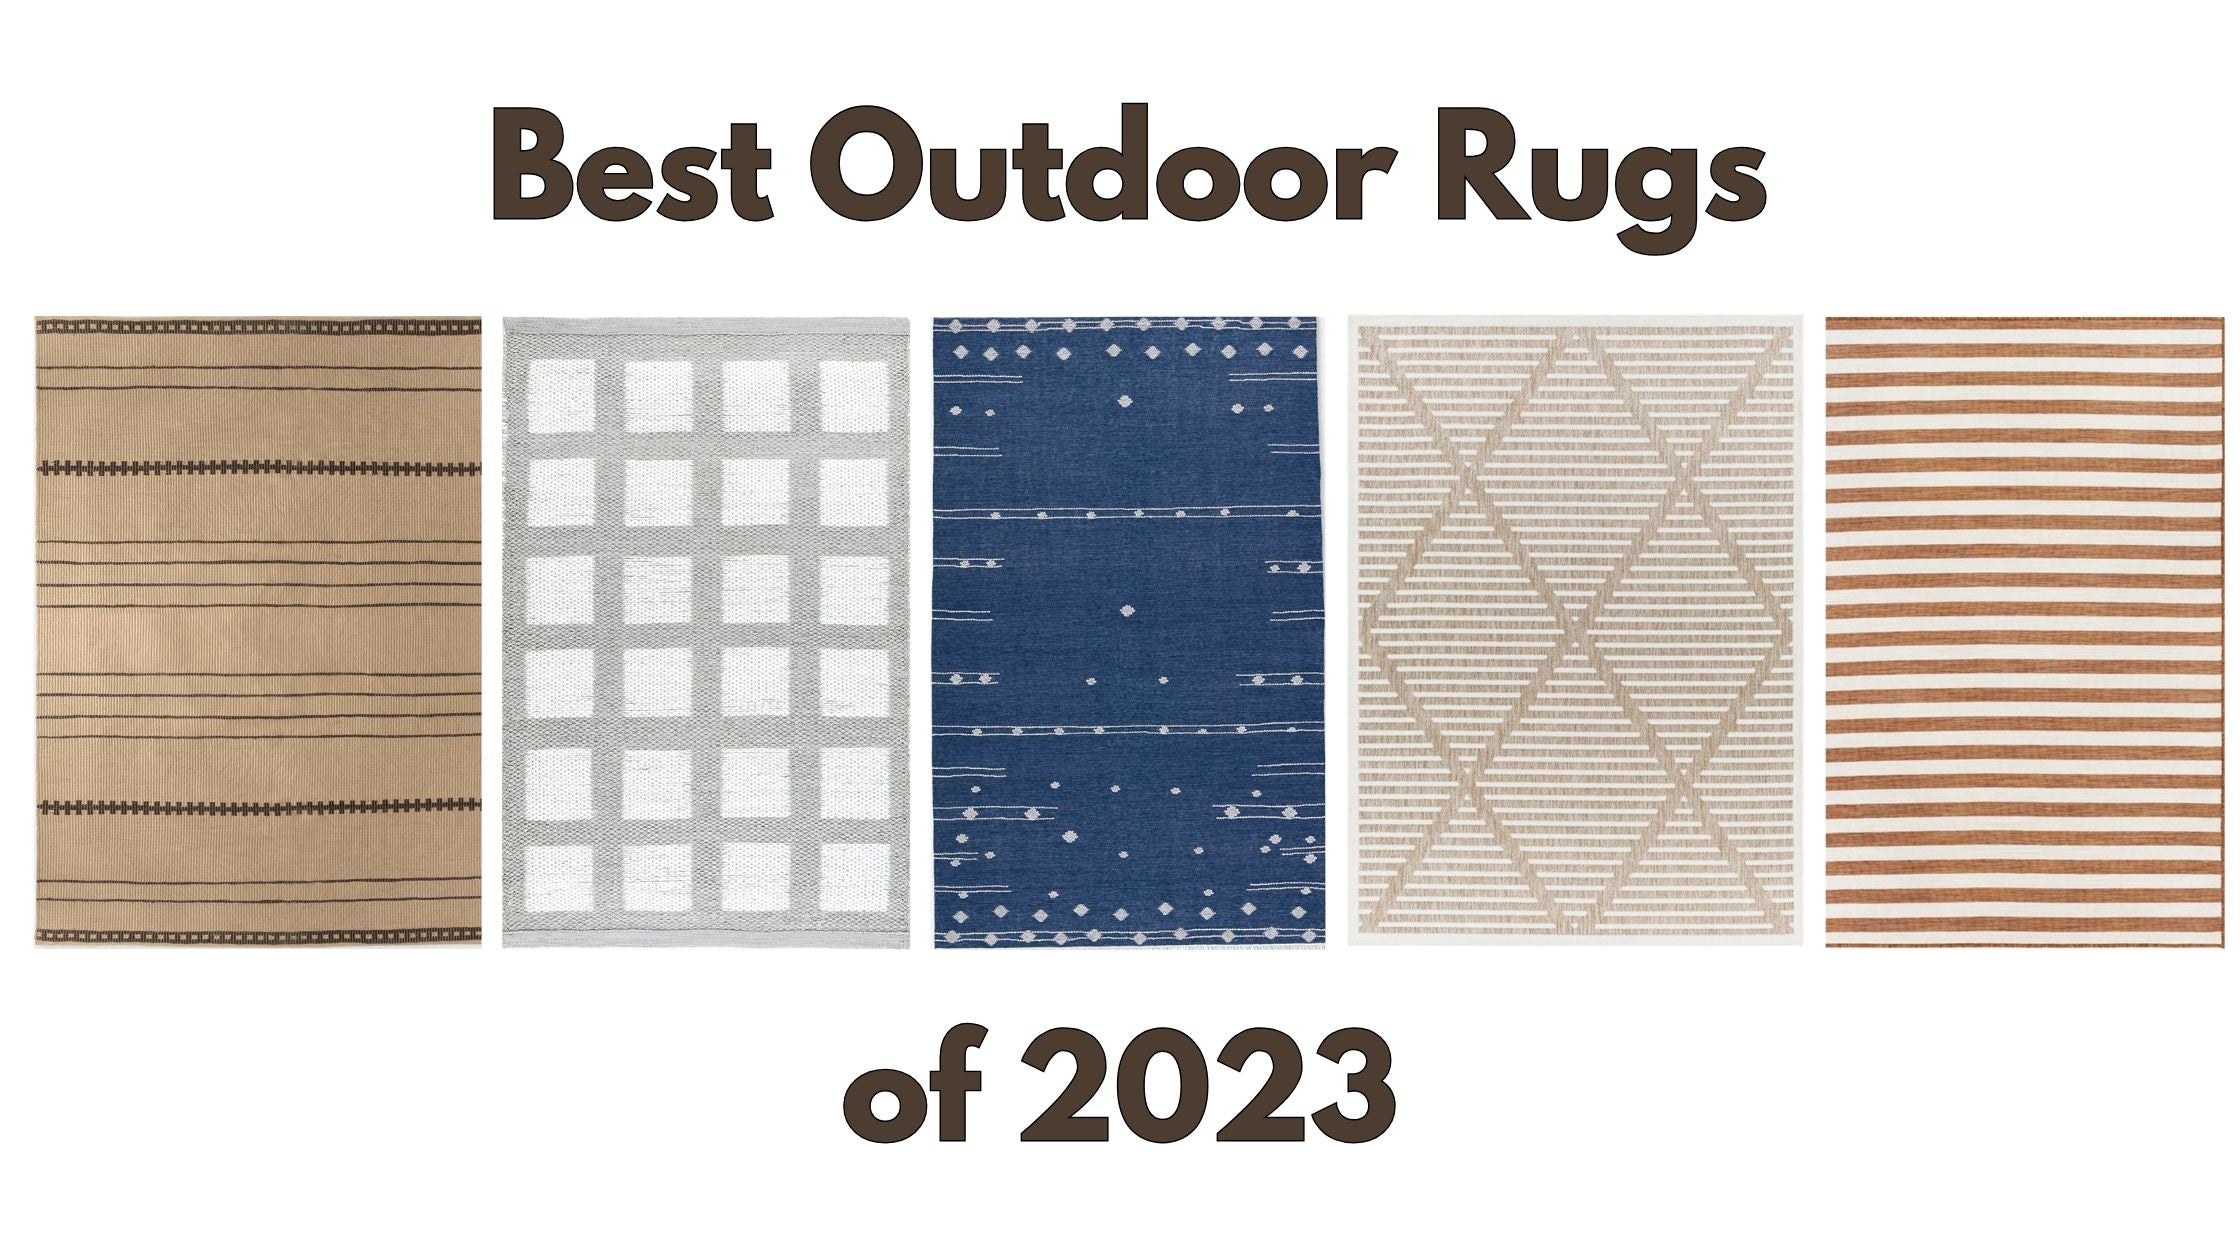 Best Outdoor Rugs of 2023